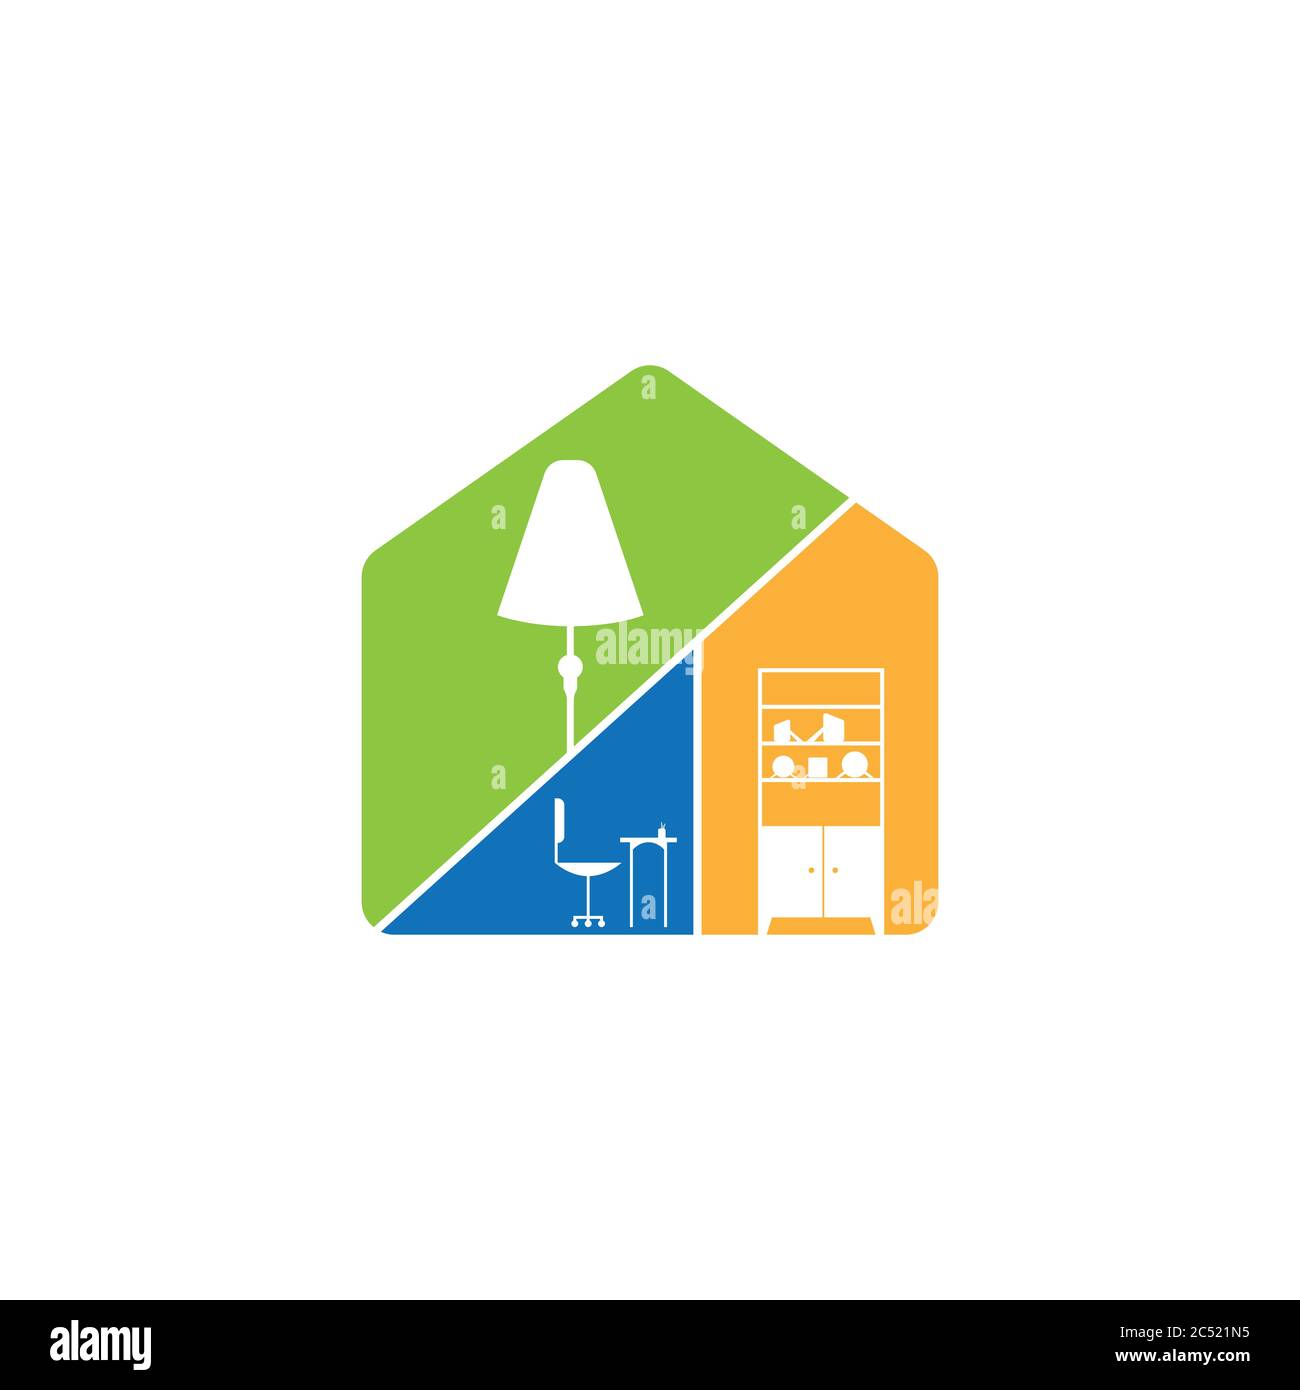 Creative Modern Home Interior Logo Design Vector Image Home Interior